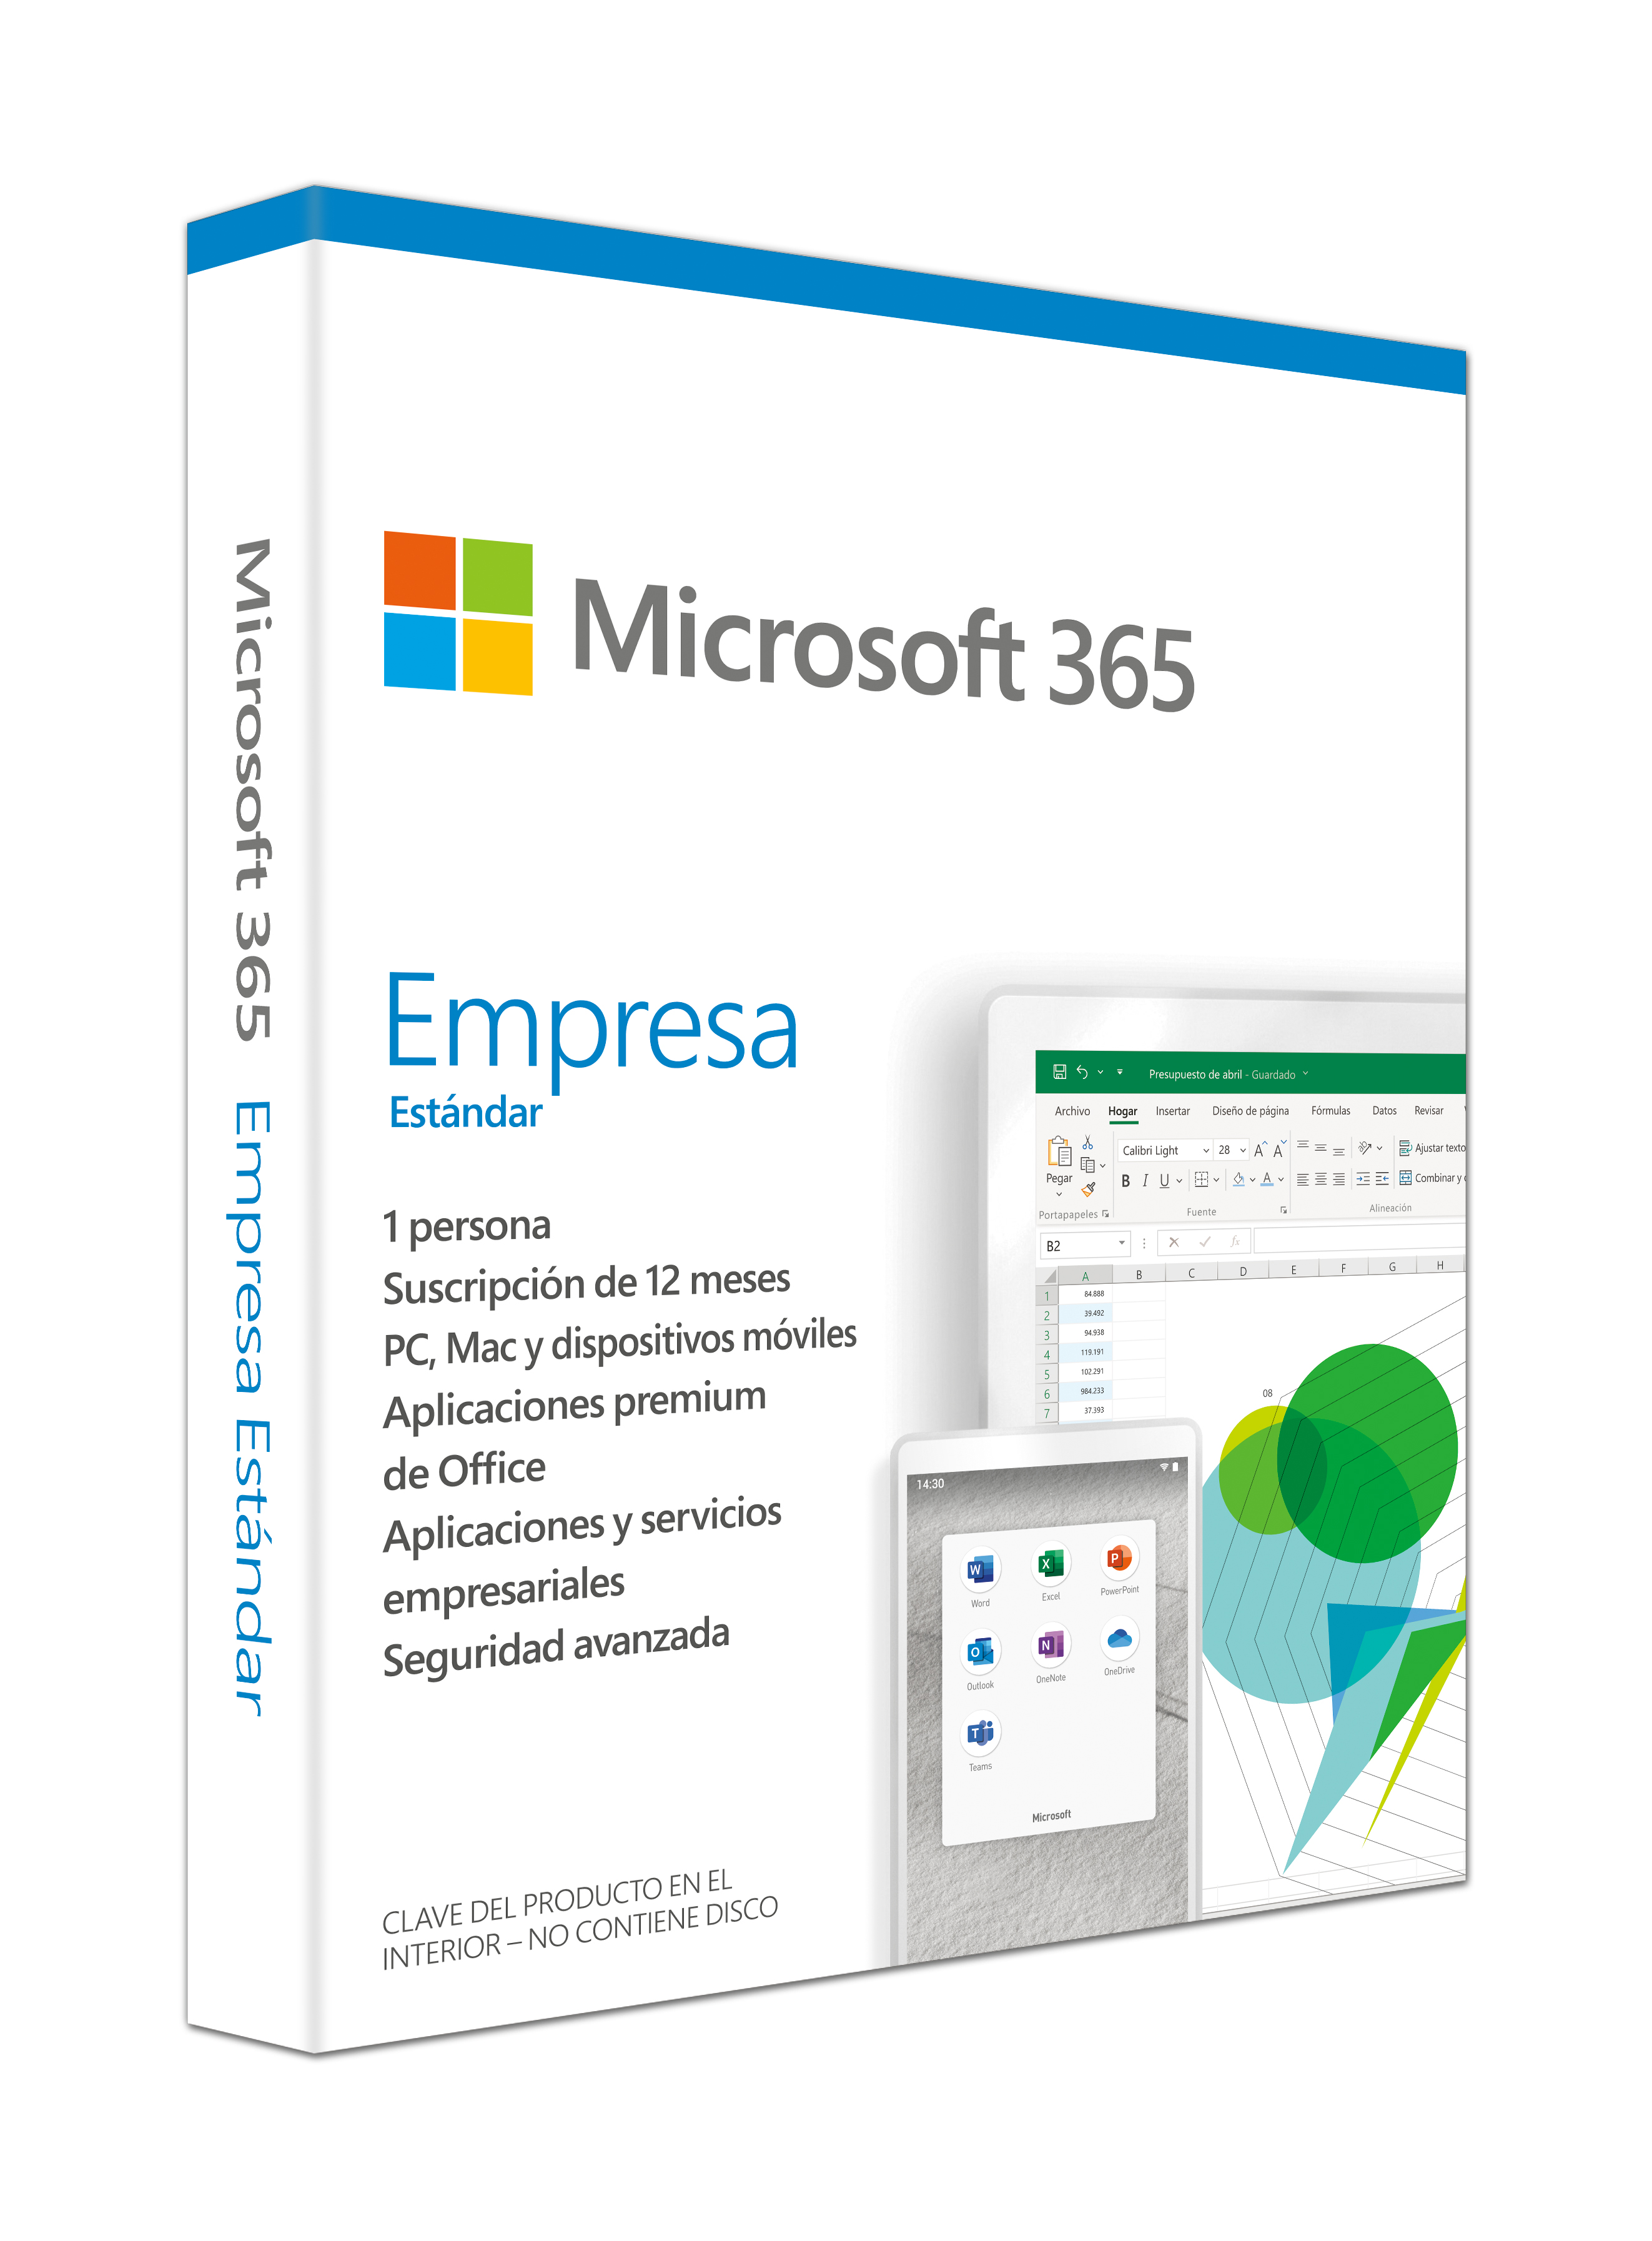 Imagen de la licencia digital de Microsoft 365 Empresa Estándar